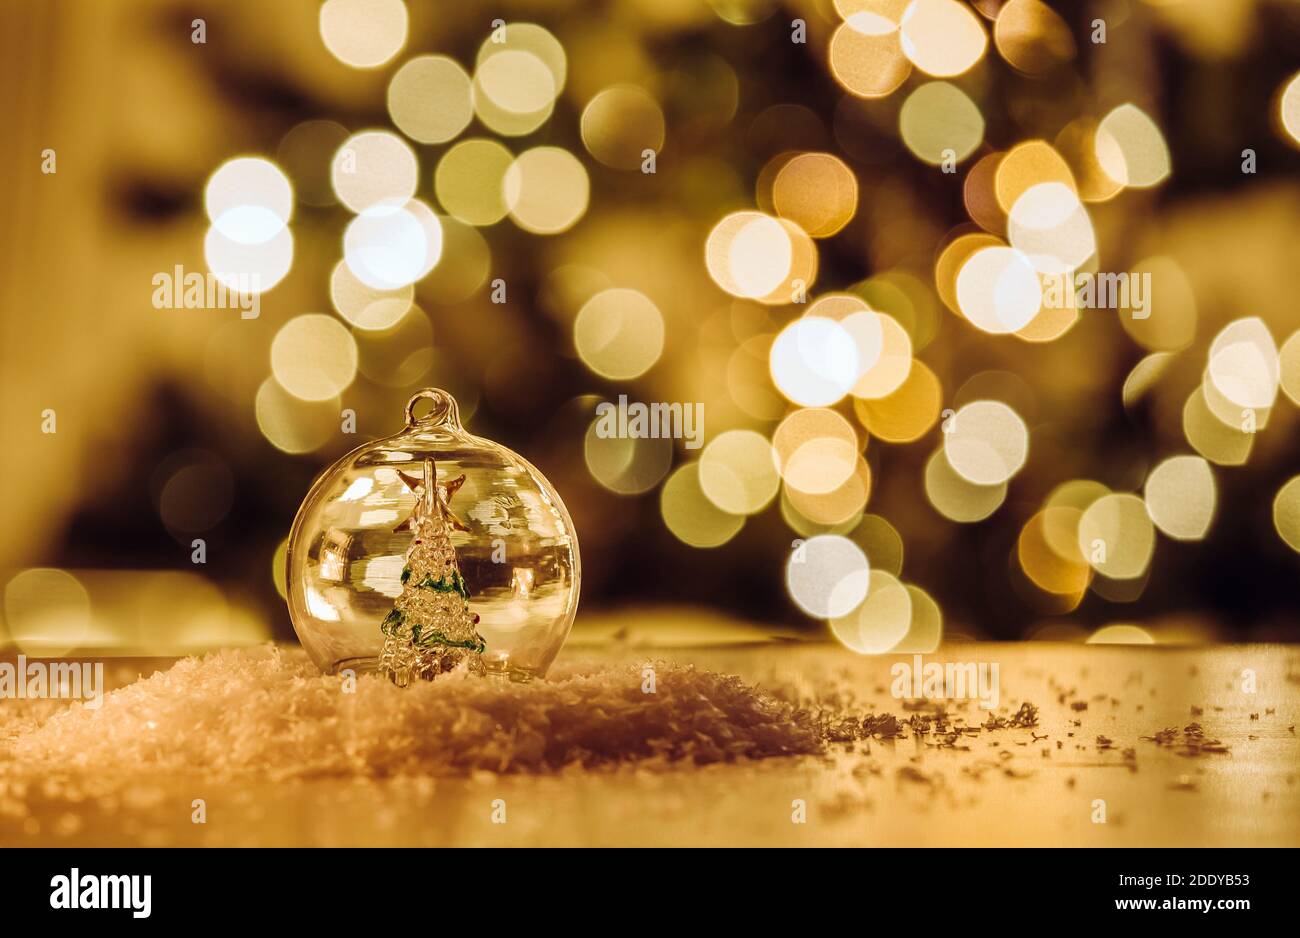 Transparente globo de Navidad con árbol de Navidad de cristal en el interior, bokeh fiesta luces en el fondo. Fondo de estilo tema de Navidad para productos. Foto de stock